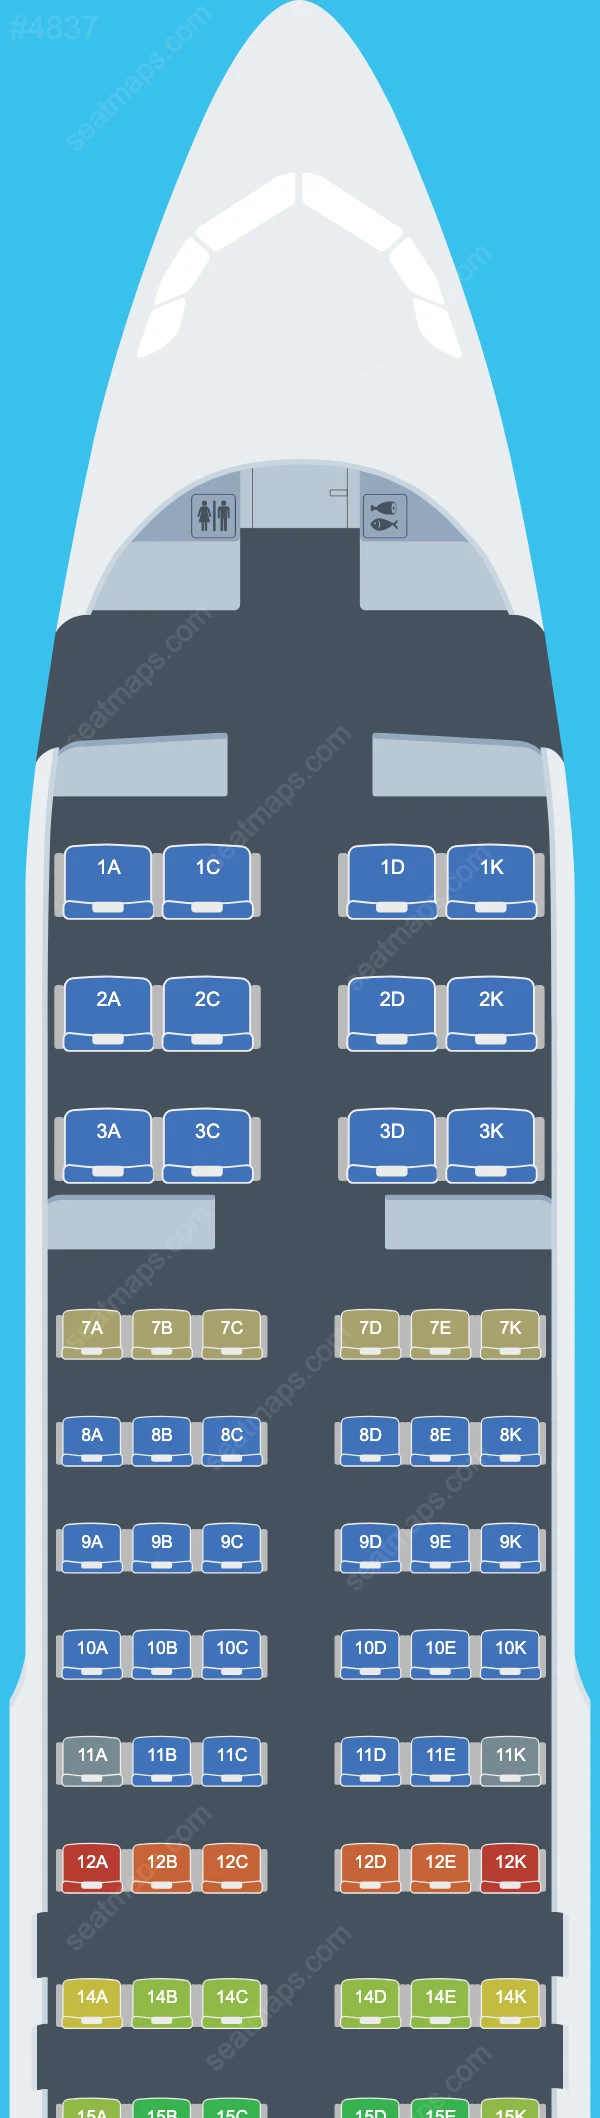 Avianca El Salvador Airbus A320 Seat Maps A320-200